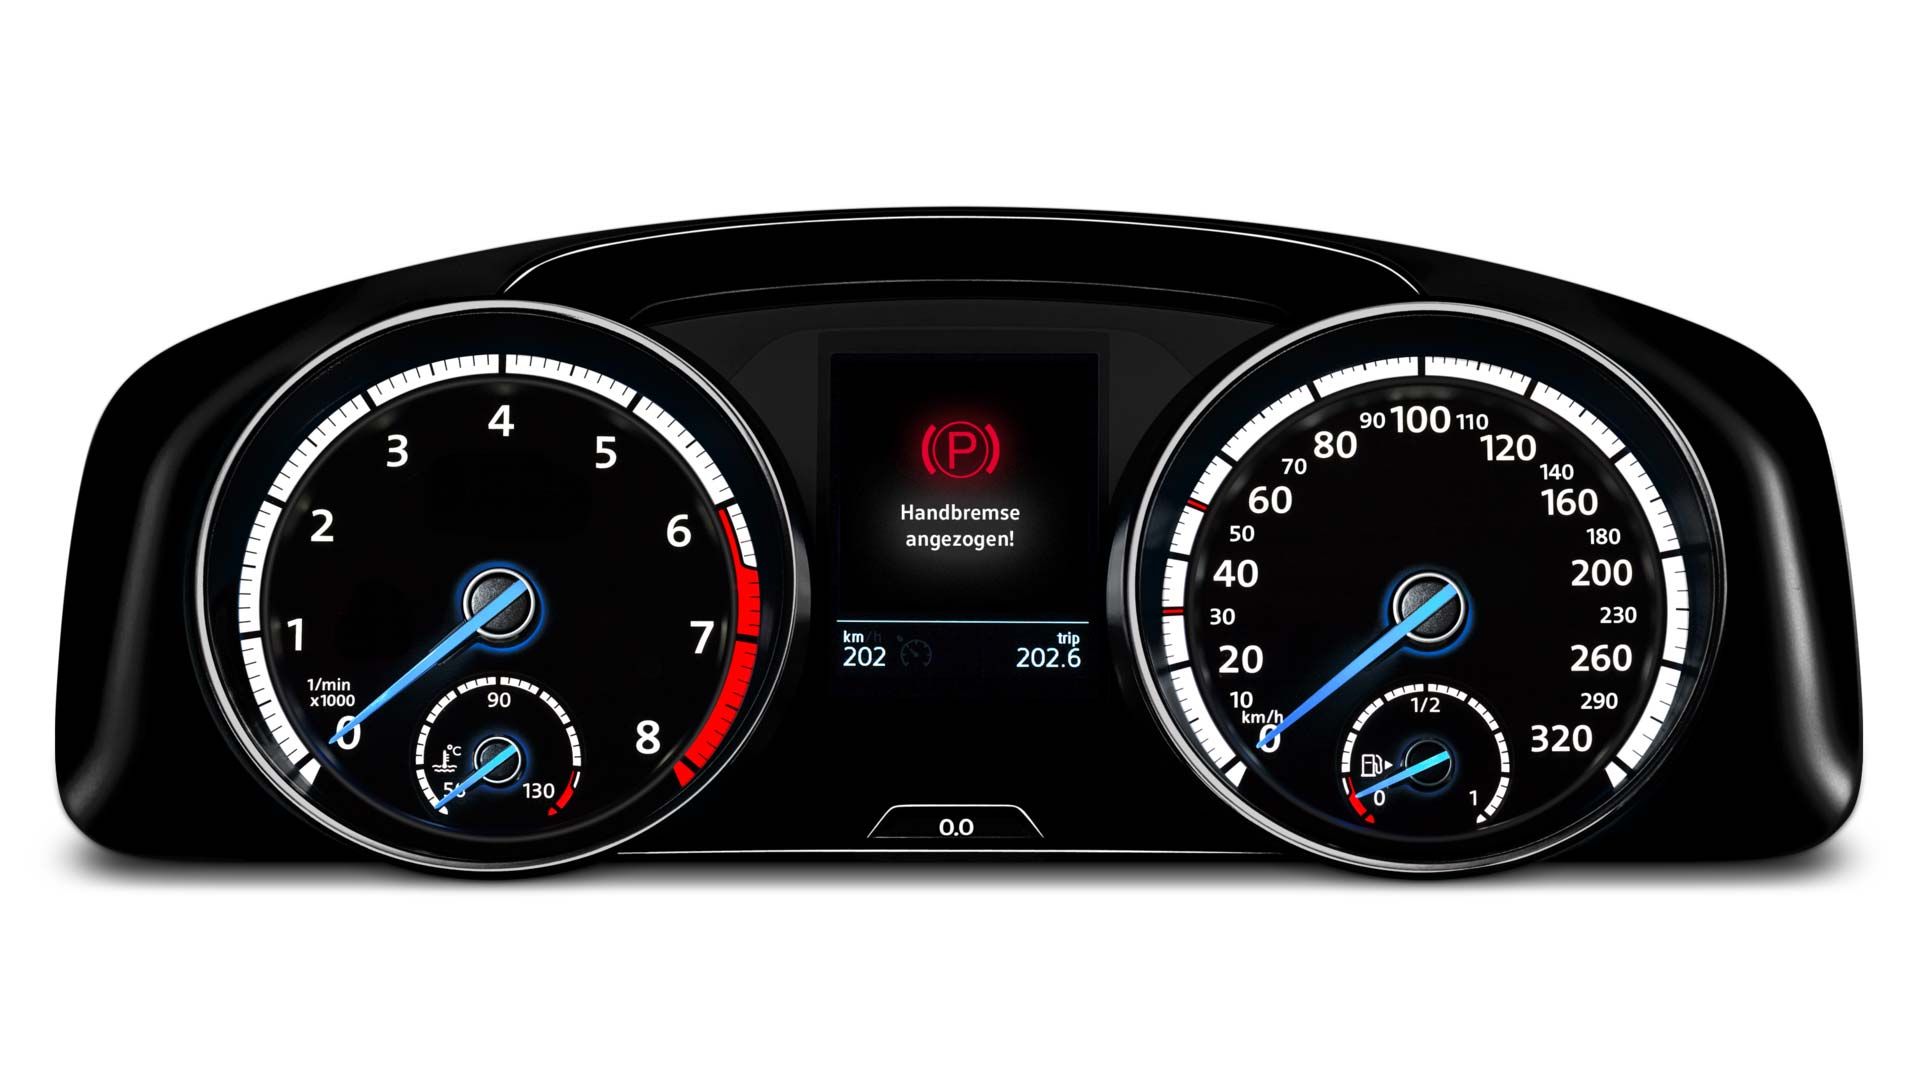 Auf dem Display eines VW wird der Hinweis "Handbremse angezogen" angezeigt.